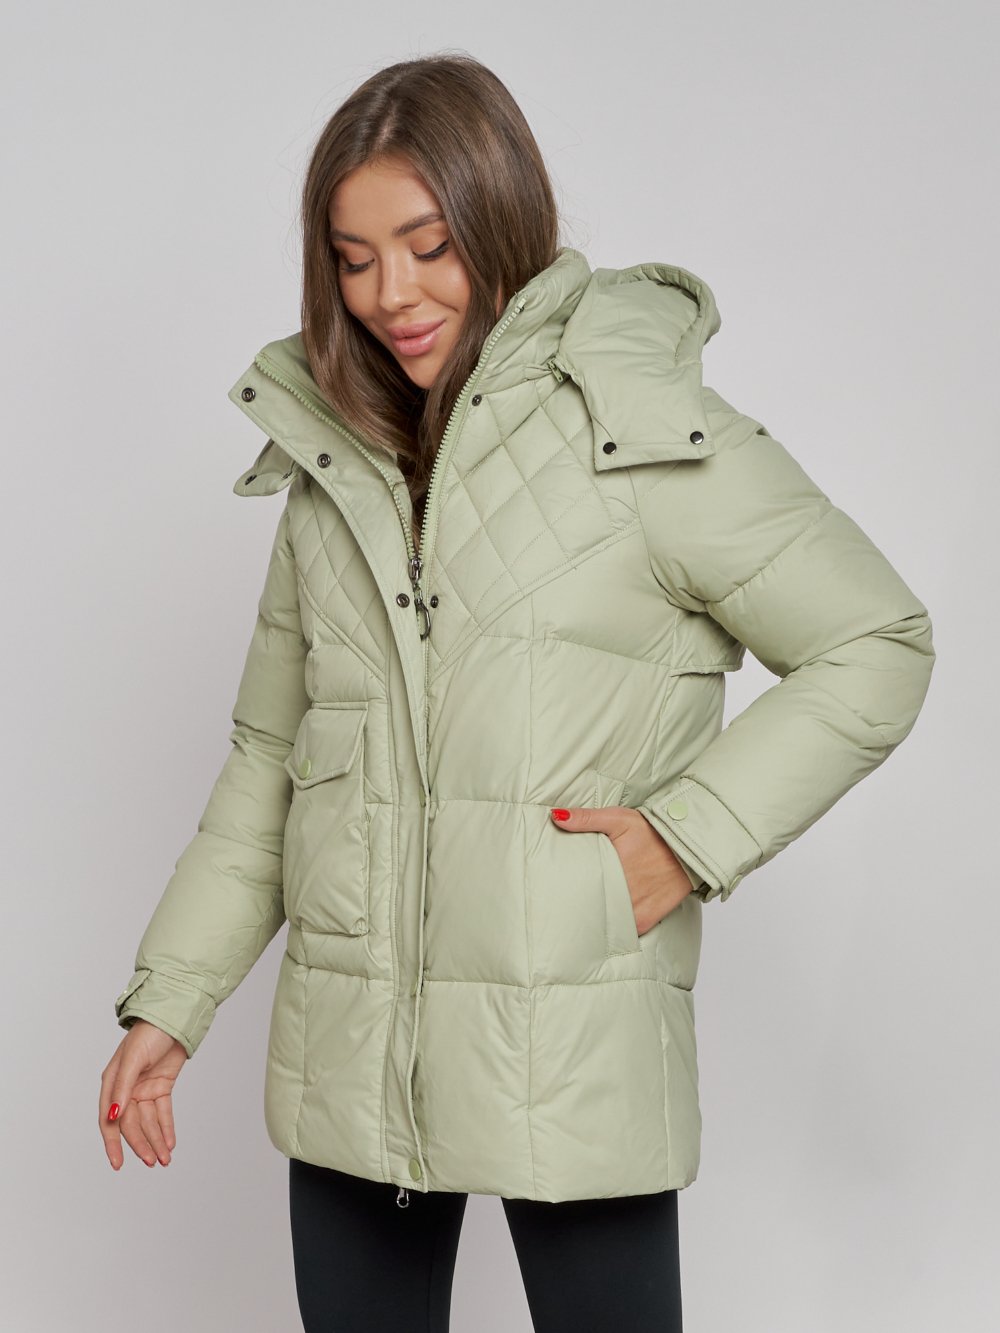 Купить куртку зимнюю оптом от производителя недорого в Москве 52301Sl 1